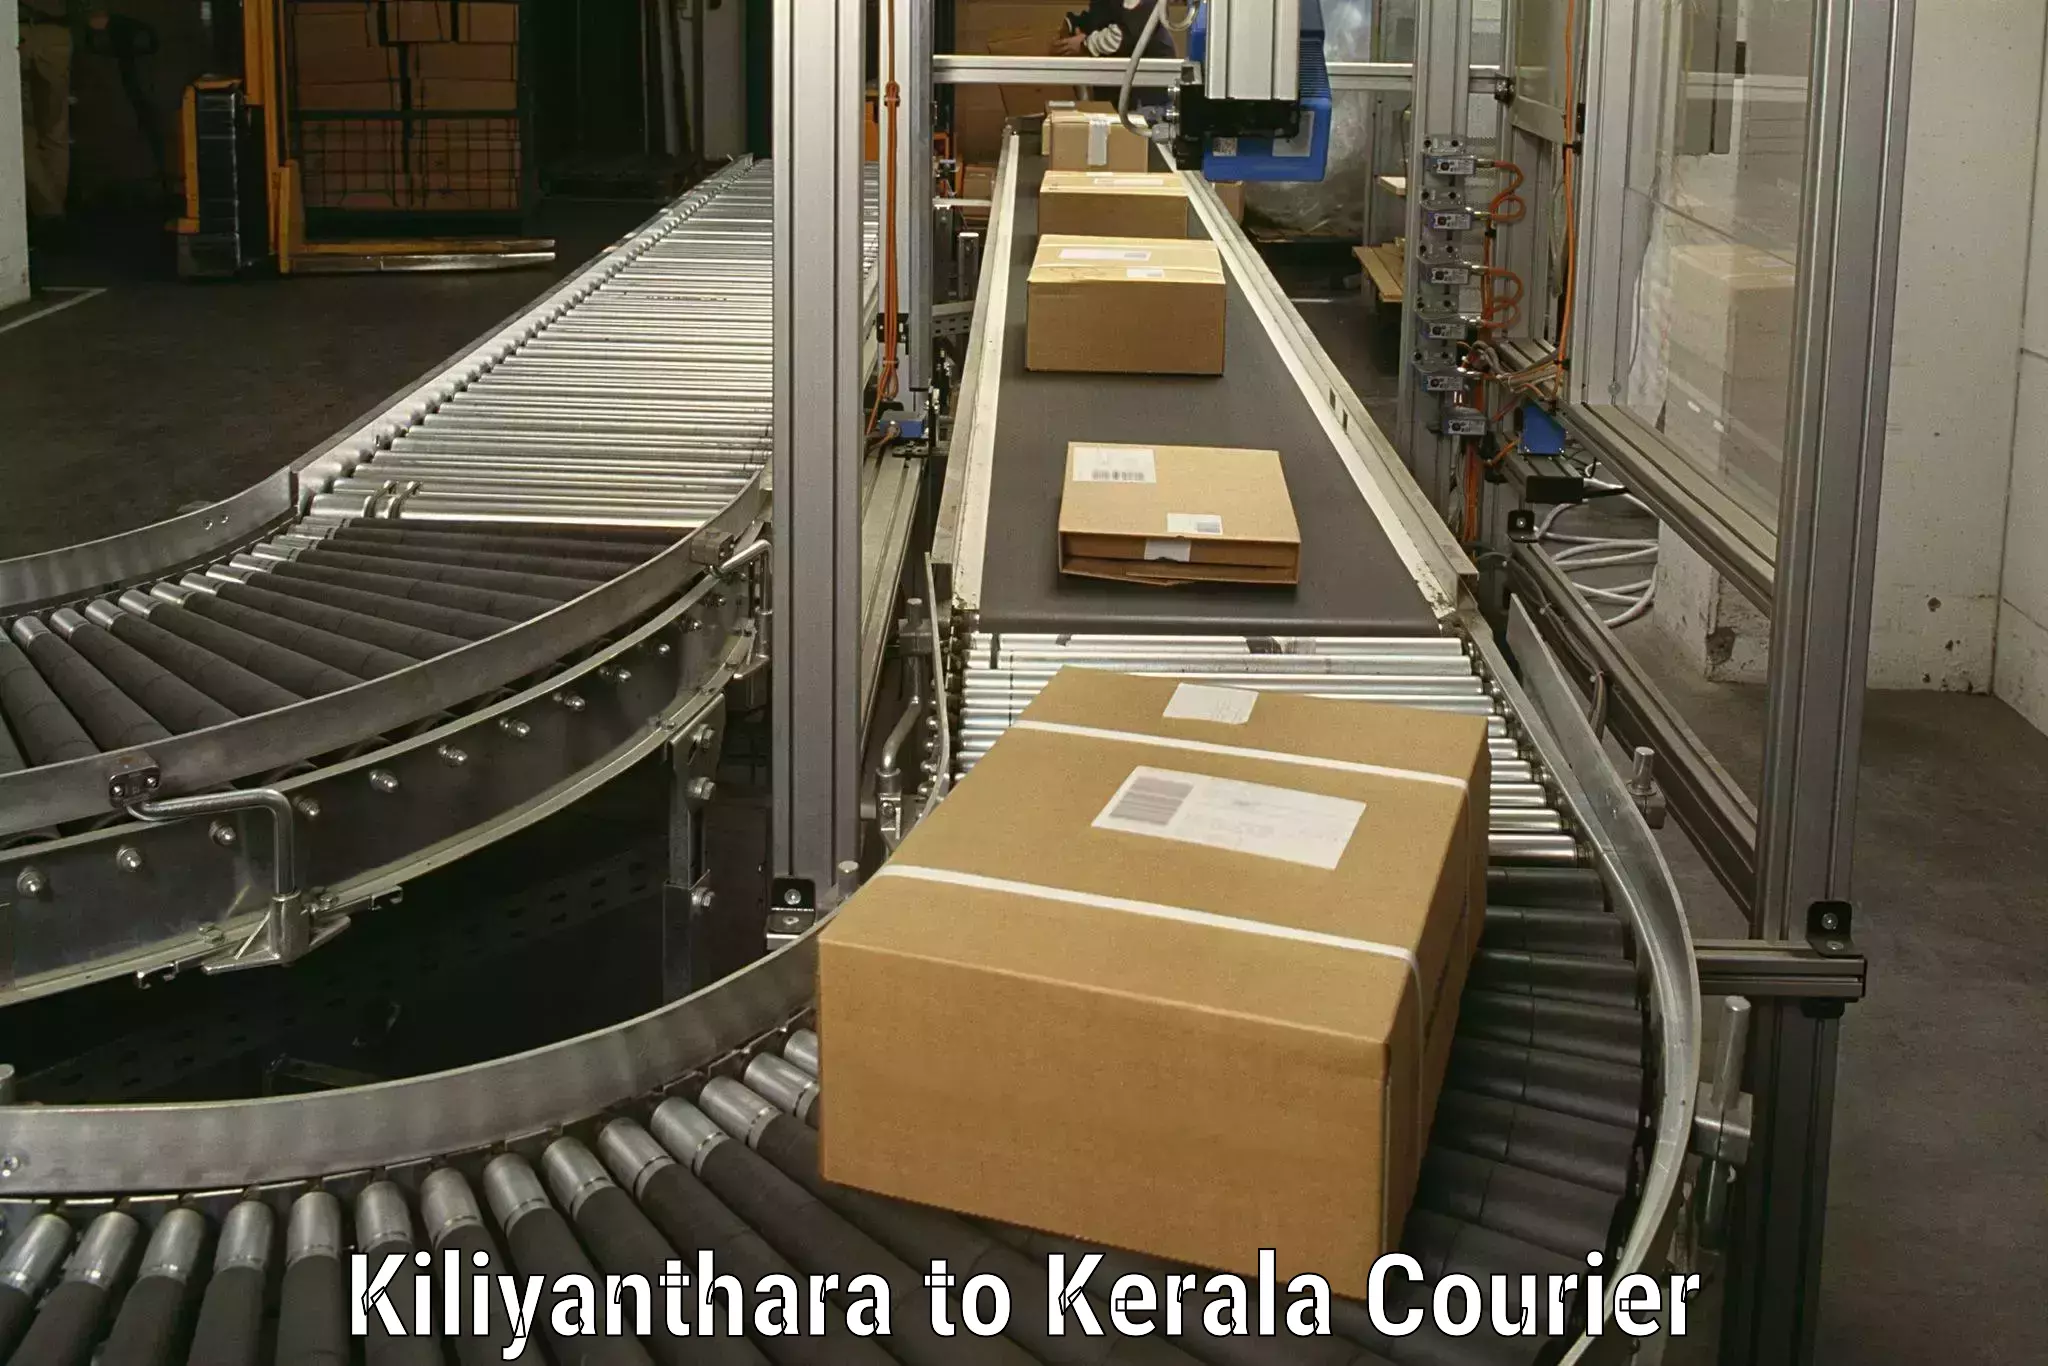 Furniture moving service Kiliyanthara to Palakkad